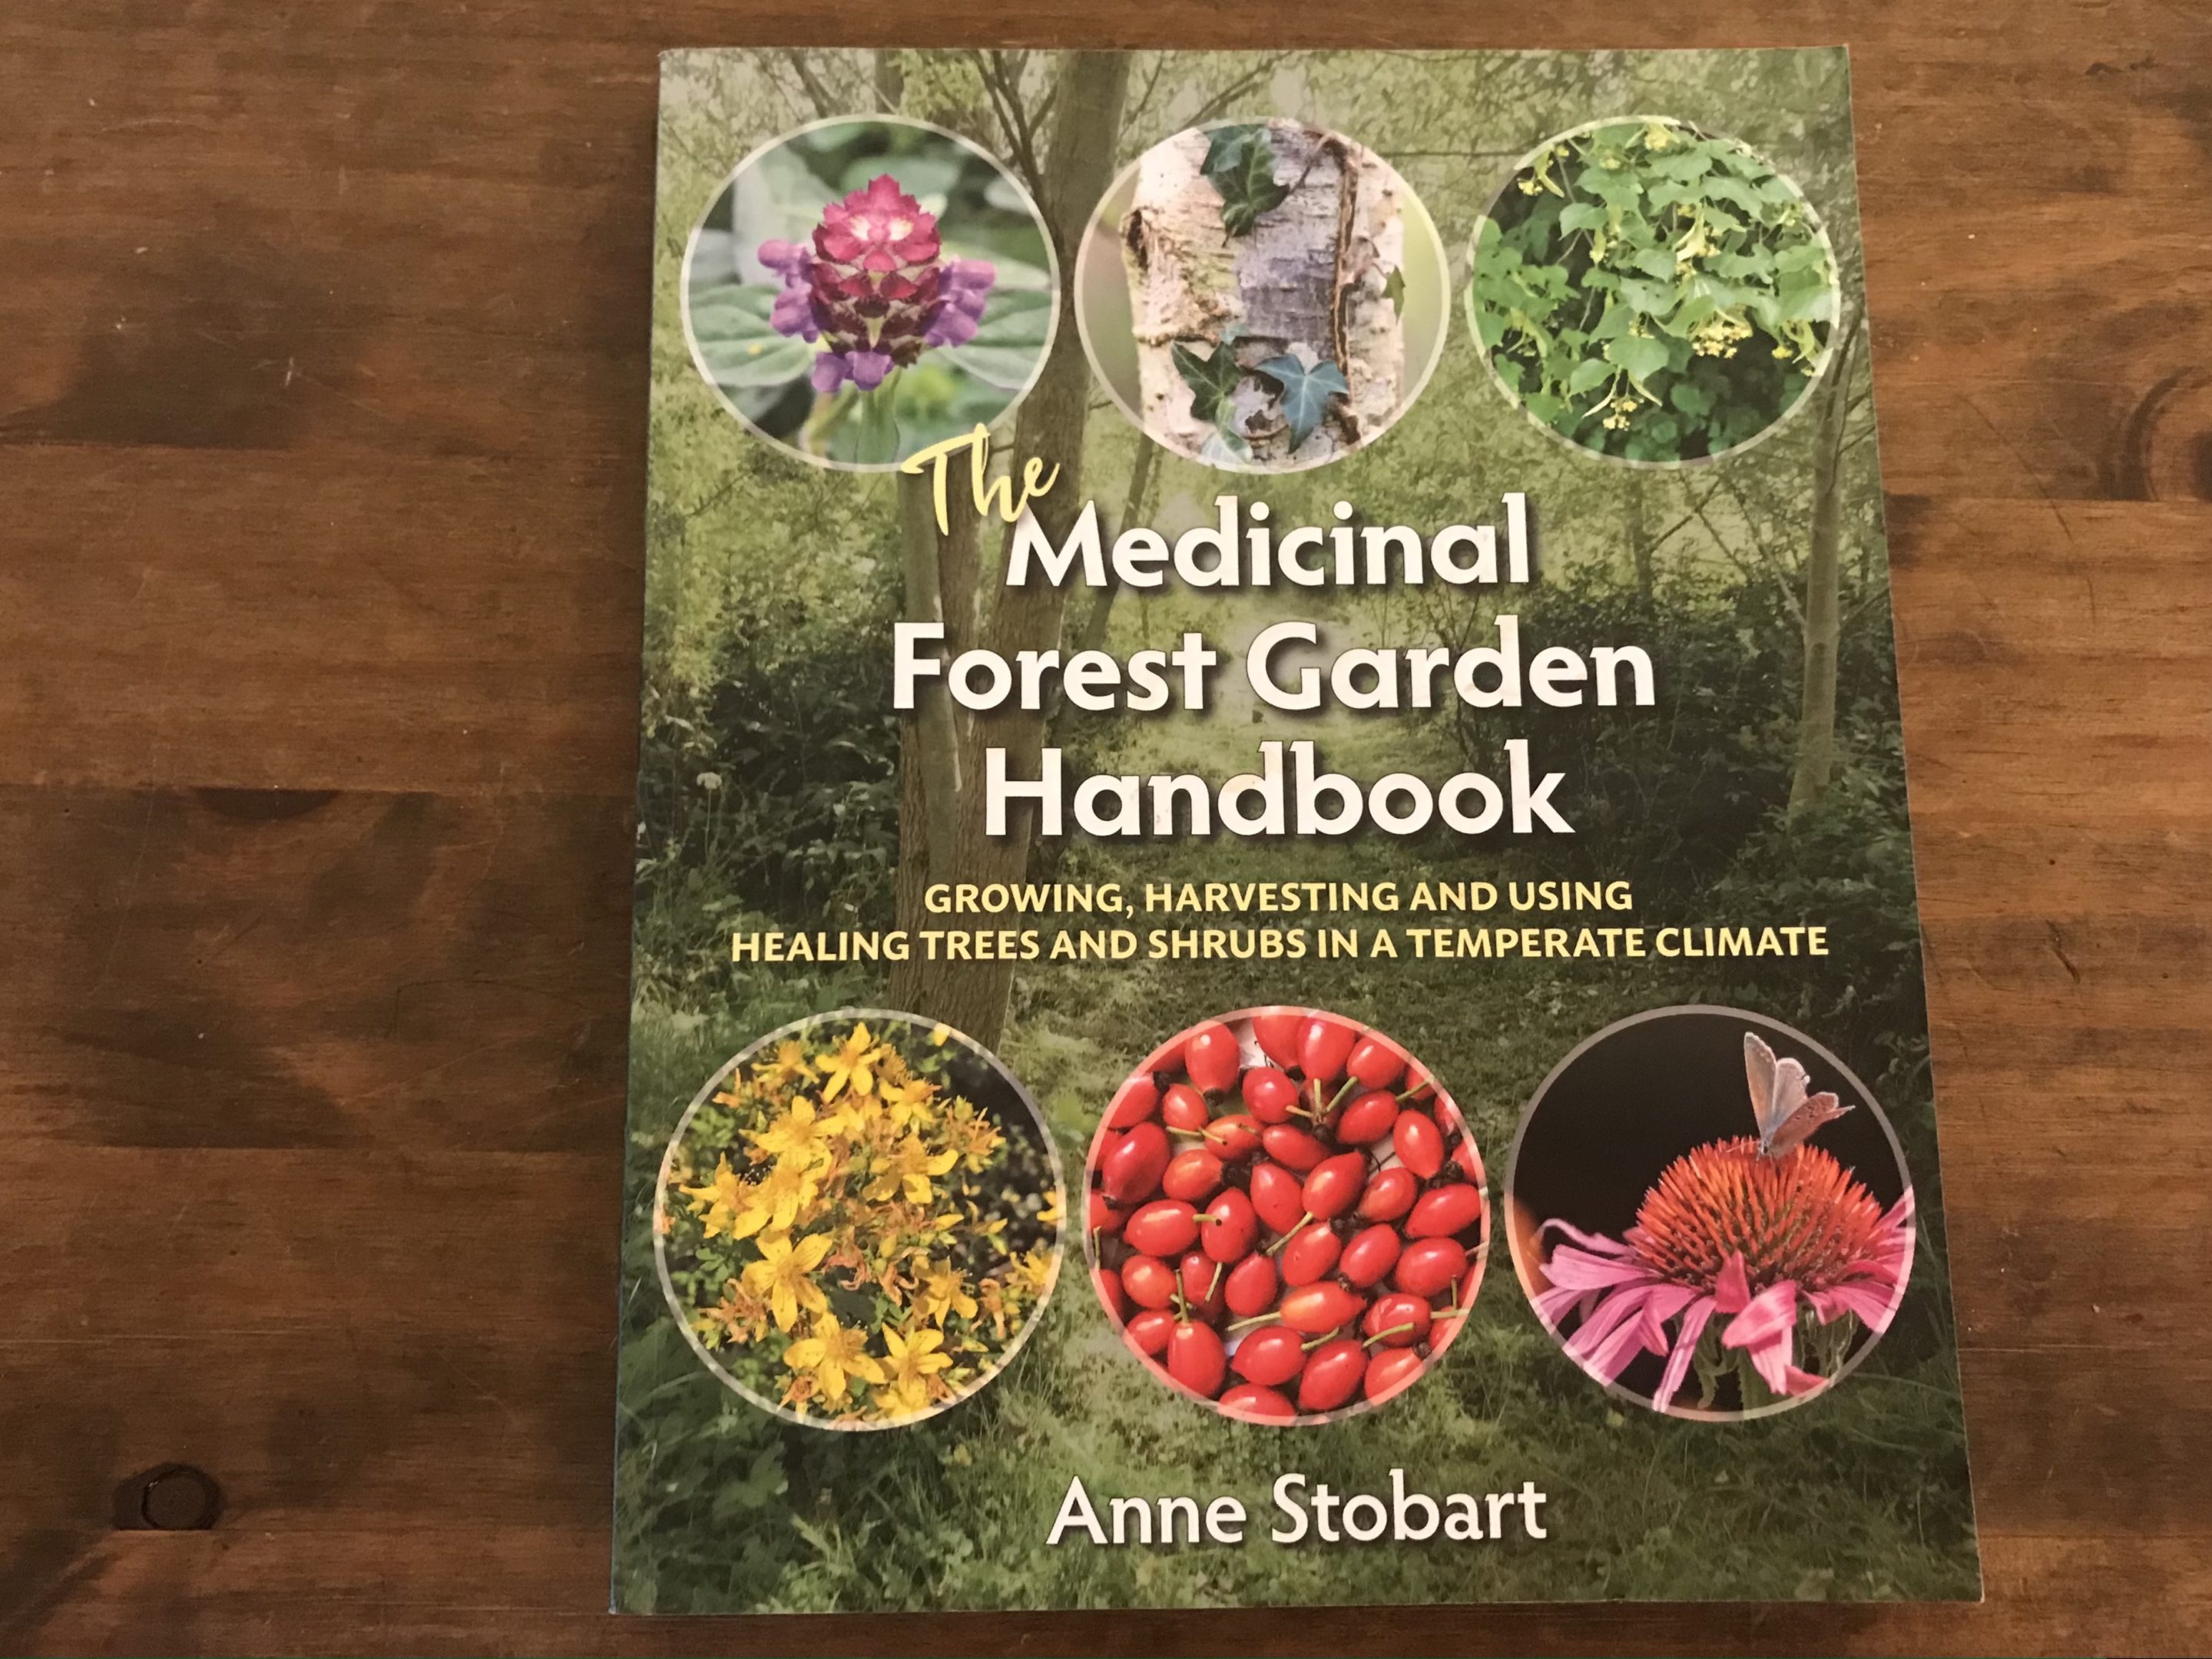 medicinal forest garden handbook anne stobart review